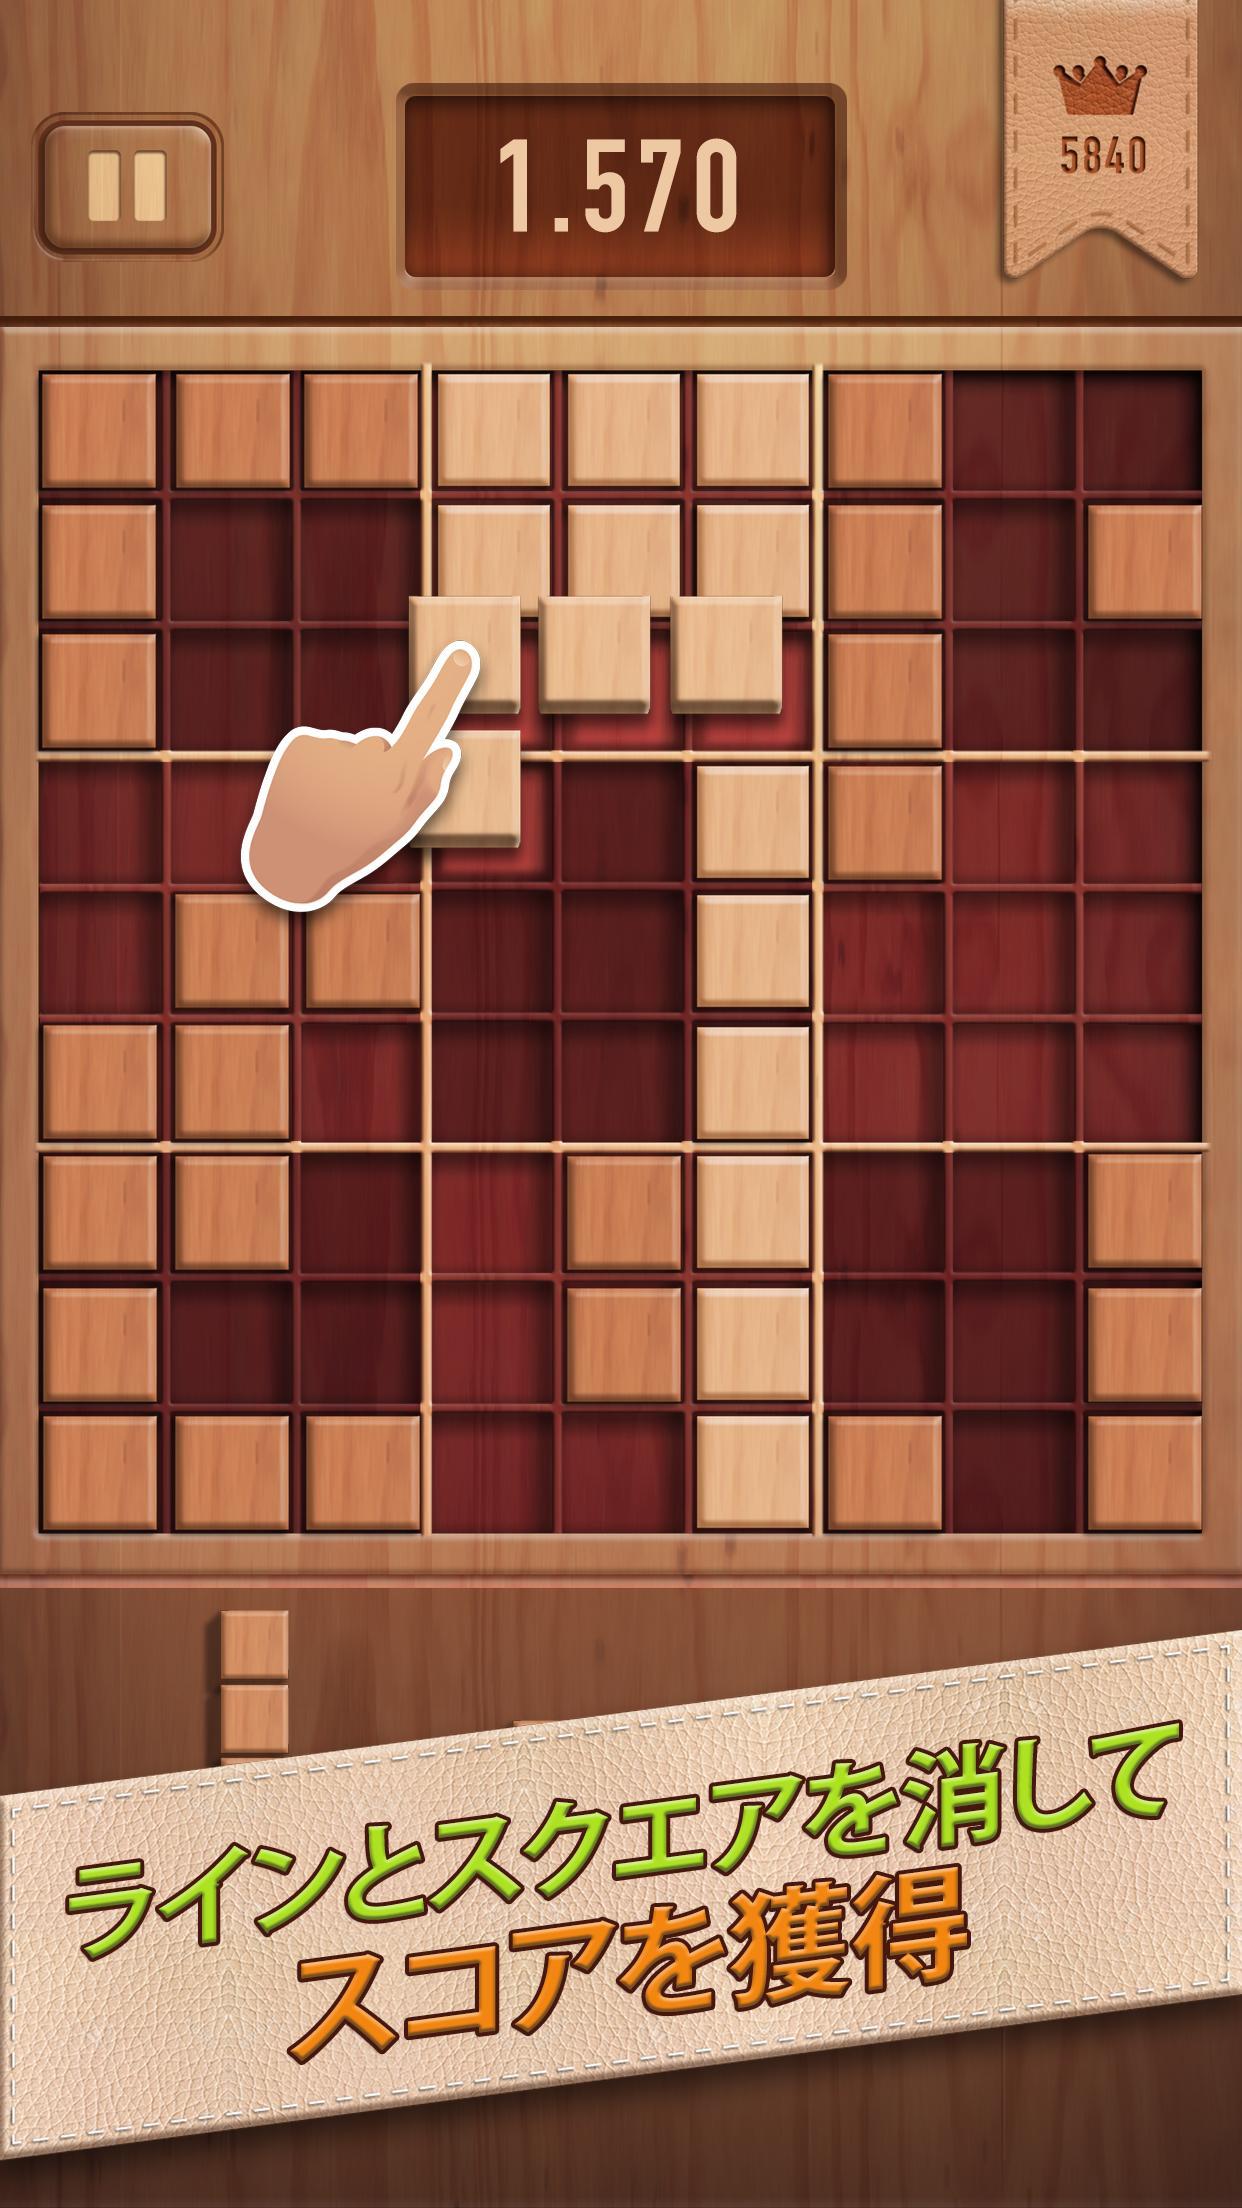 ウッディー99 (Woody 99): ブロックパズルのキャプチャ